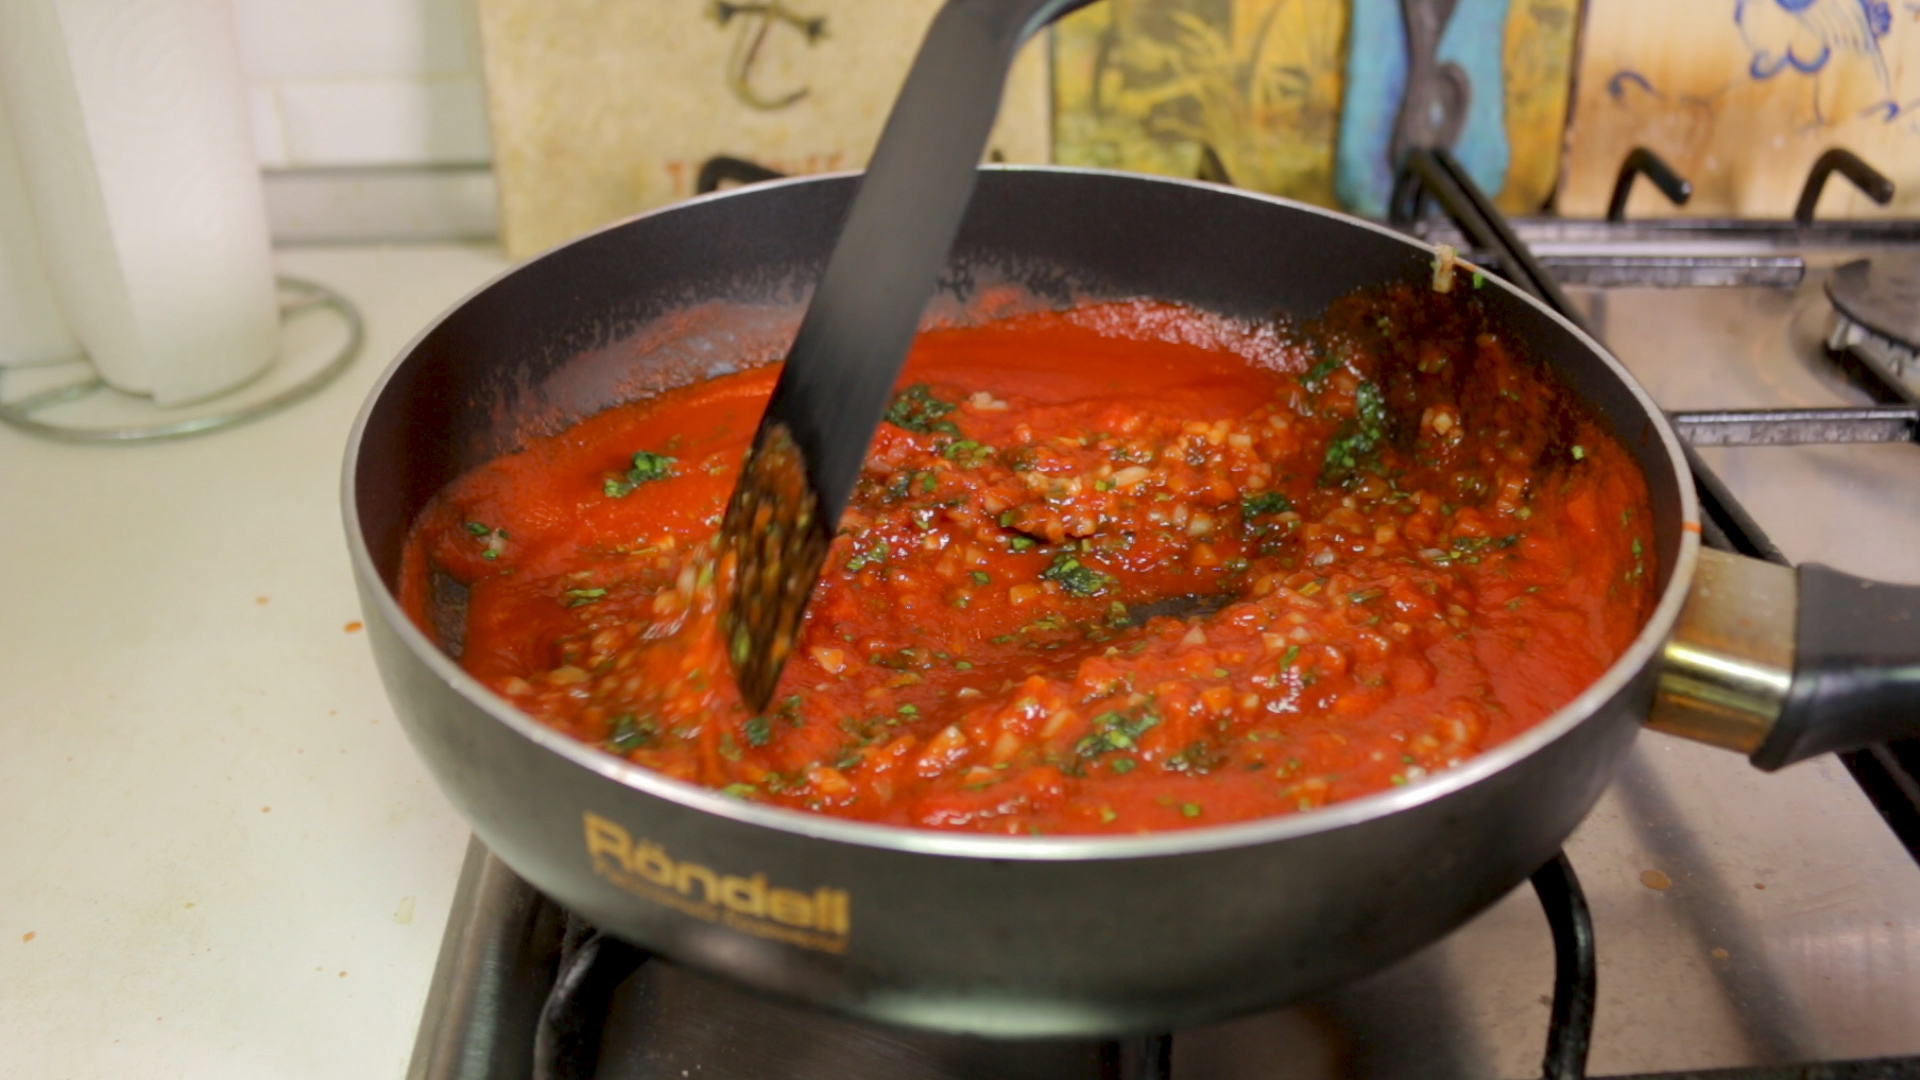 Красный соус для шашлыка по-Армянски мелко, зелень, шашлыку, будут, Приятного, чеснока, шелухи, нарезаем, Перемешиваем, сделать, нарезать, также, ингредиентов, пасты, томатной, необходимо, всего, вместе, отрезав, веточек